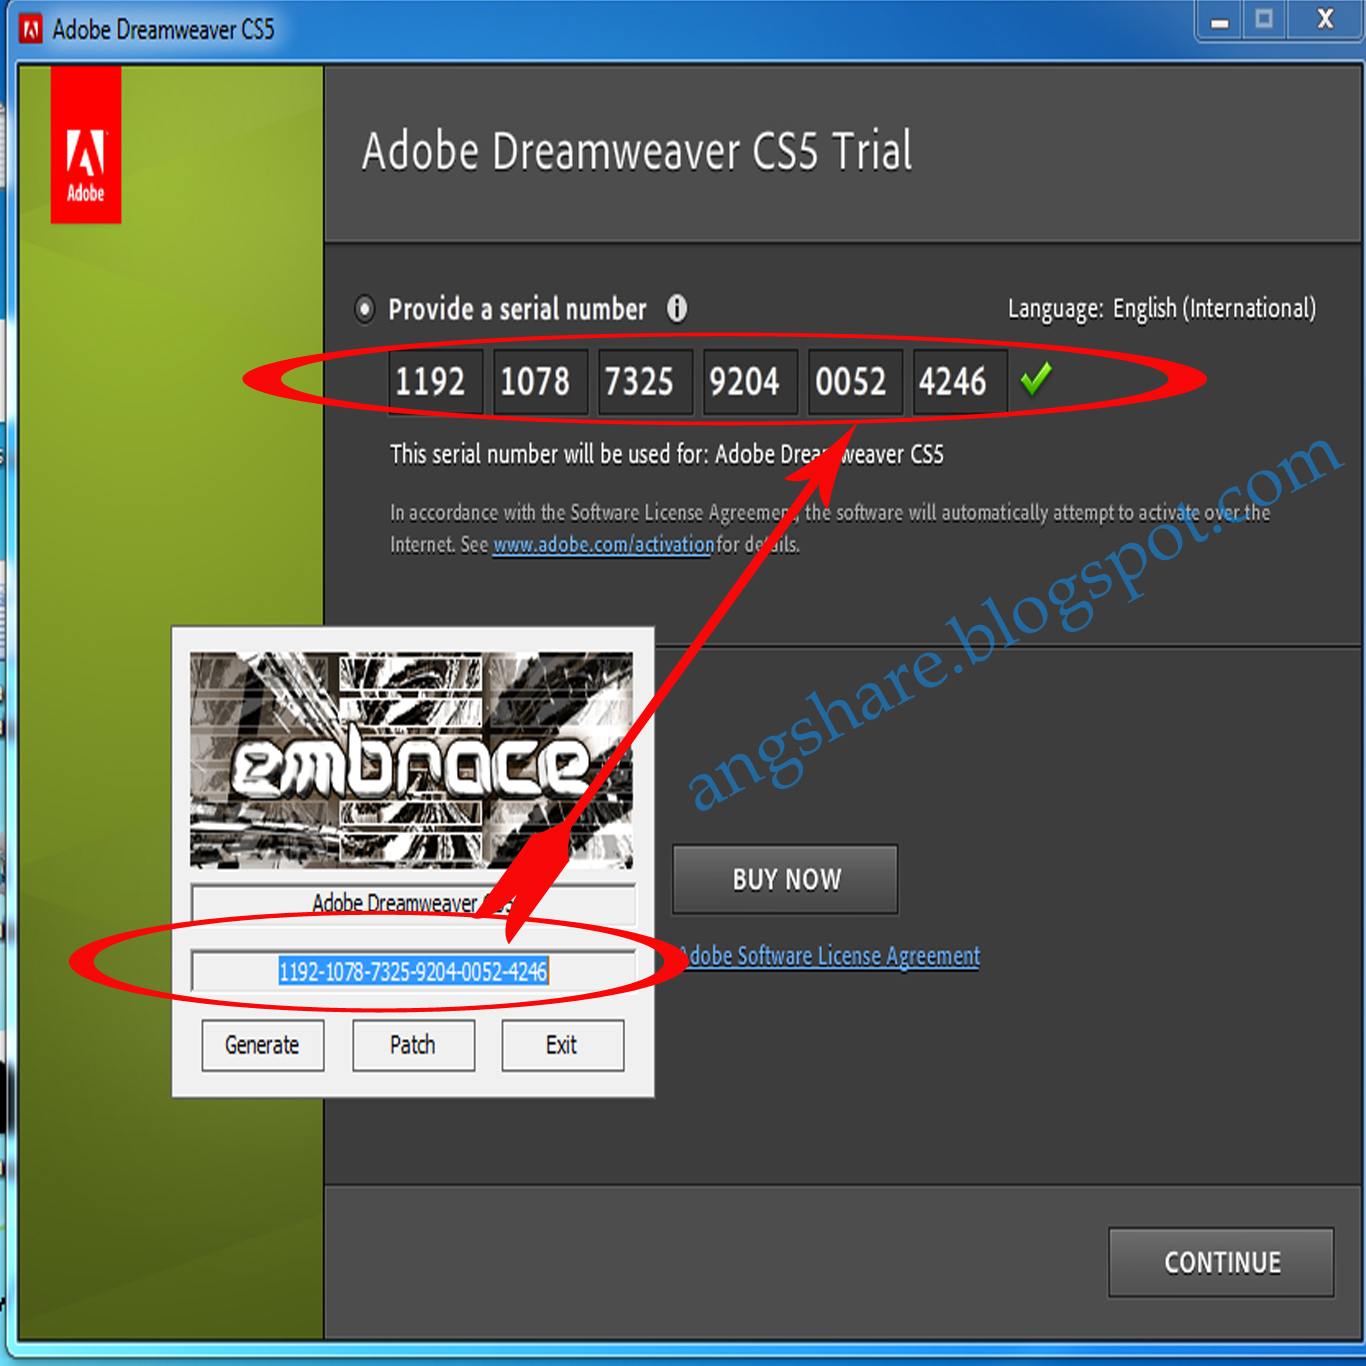 adobe dreamweaver cs6 full version with crack for windows 10